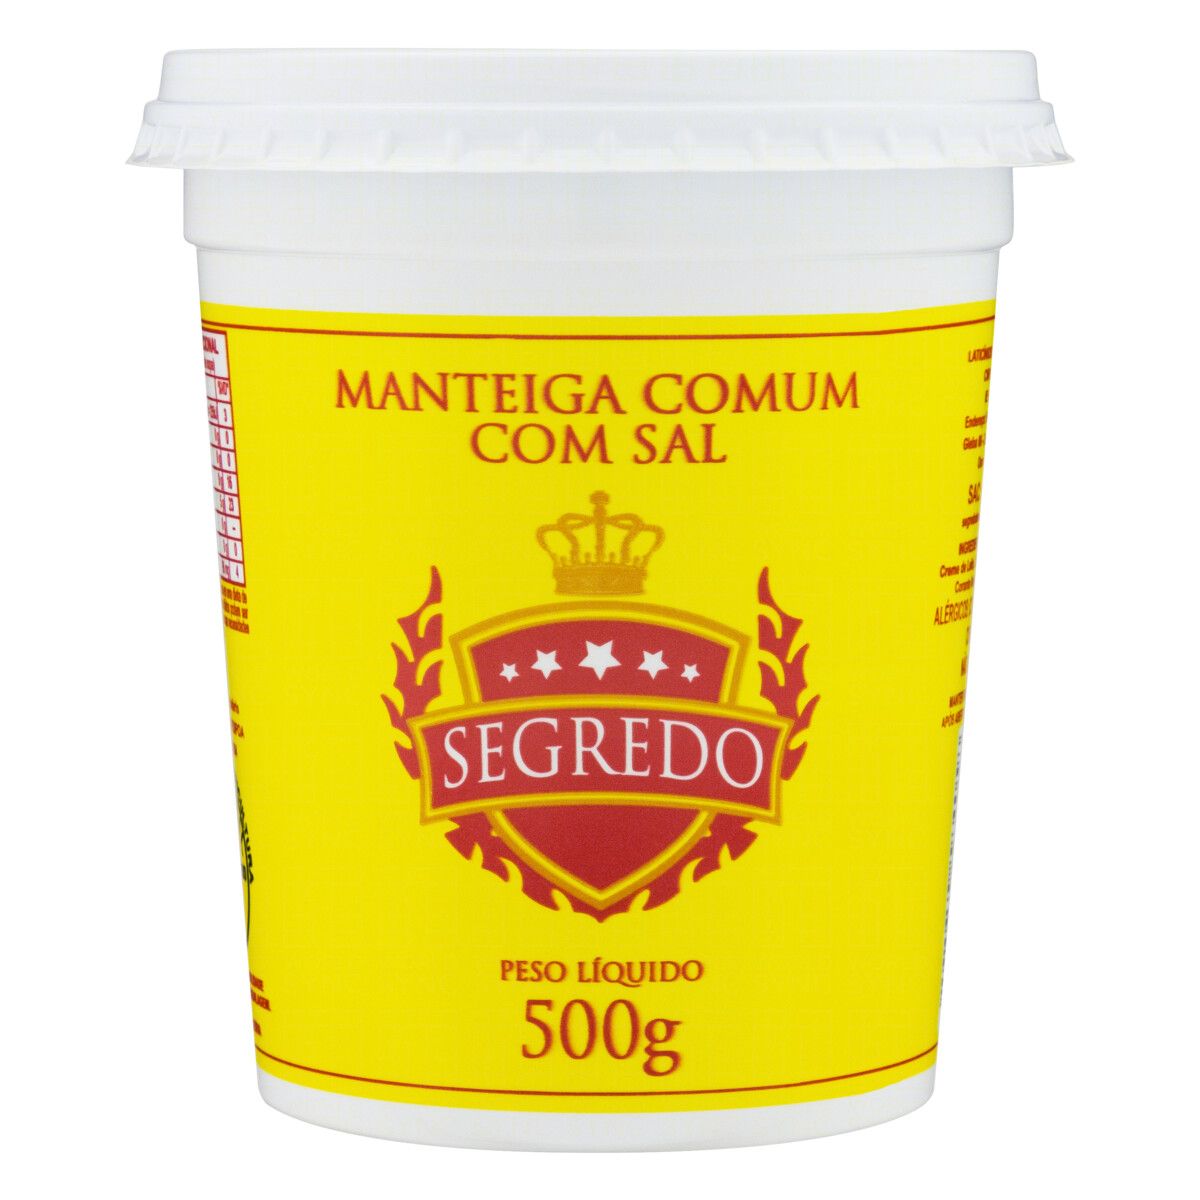 Manteiga Comum com Sal Segredo Pote 500g image number 0